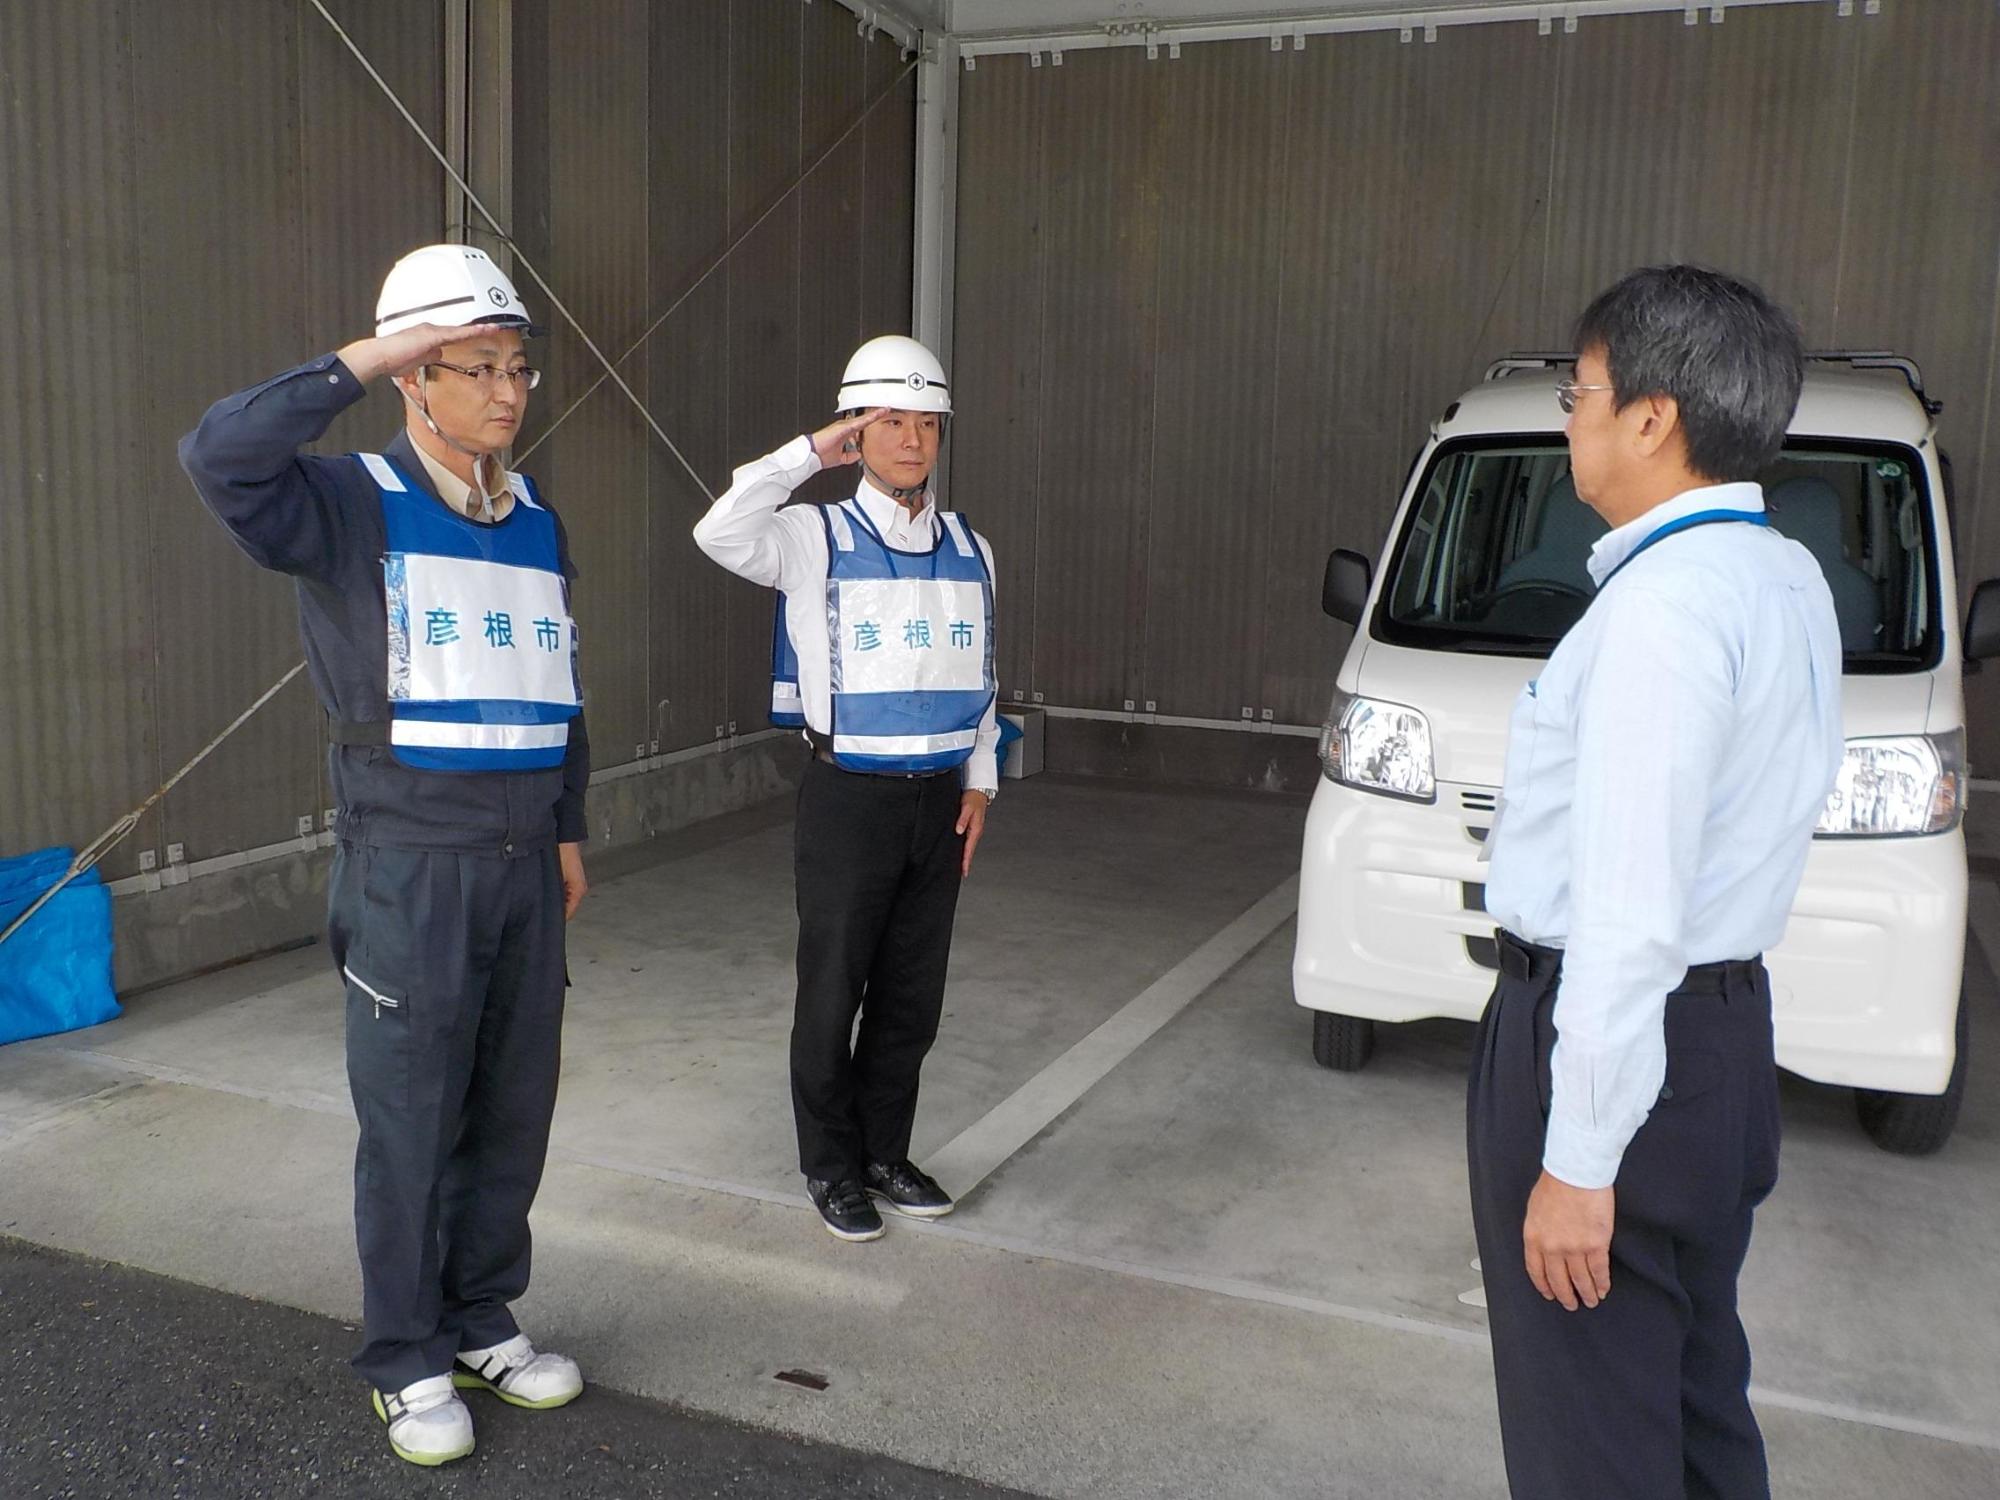 鳥取県に派遣される職員2名が出発前に敬礼をしている写真